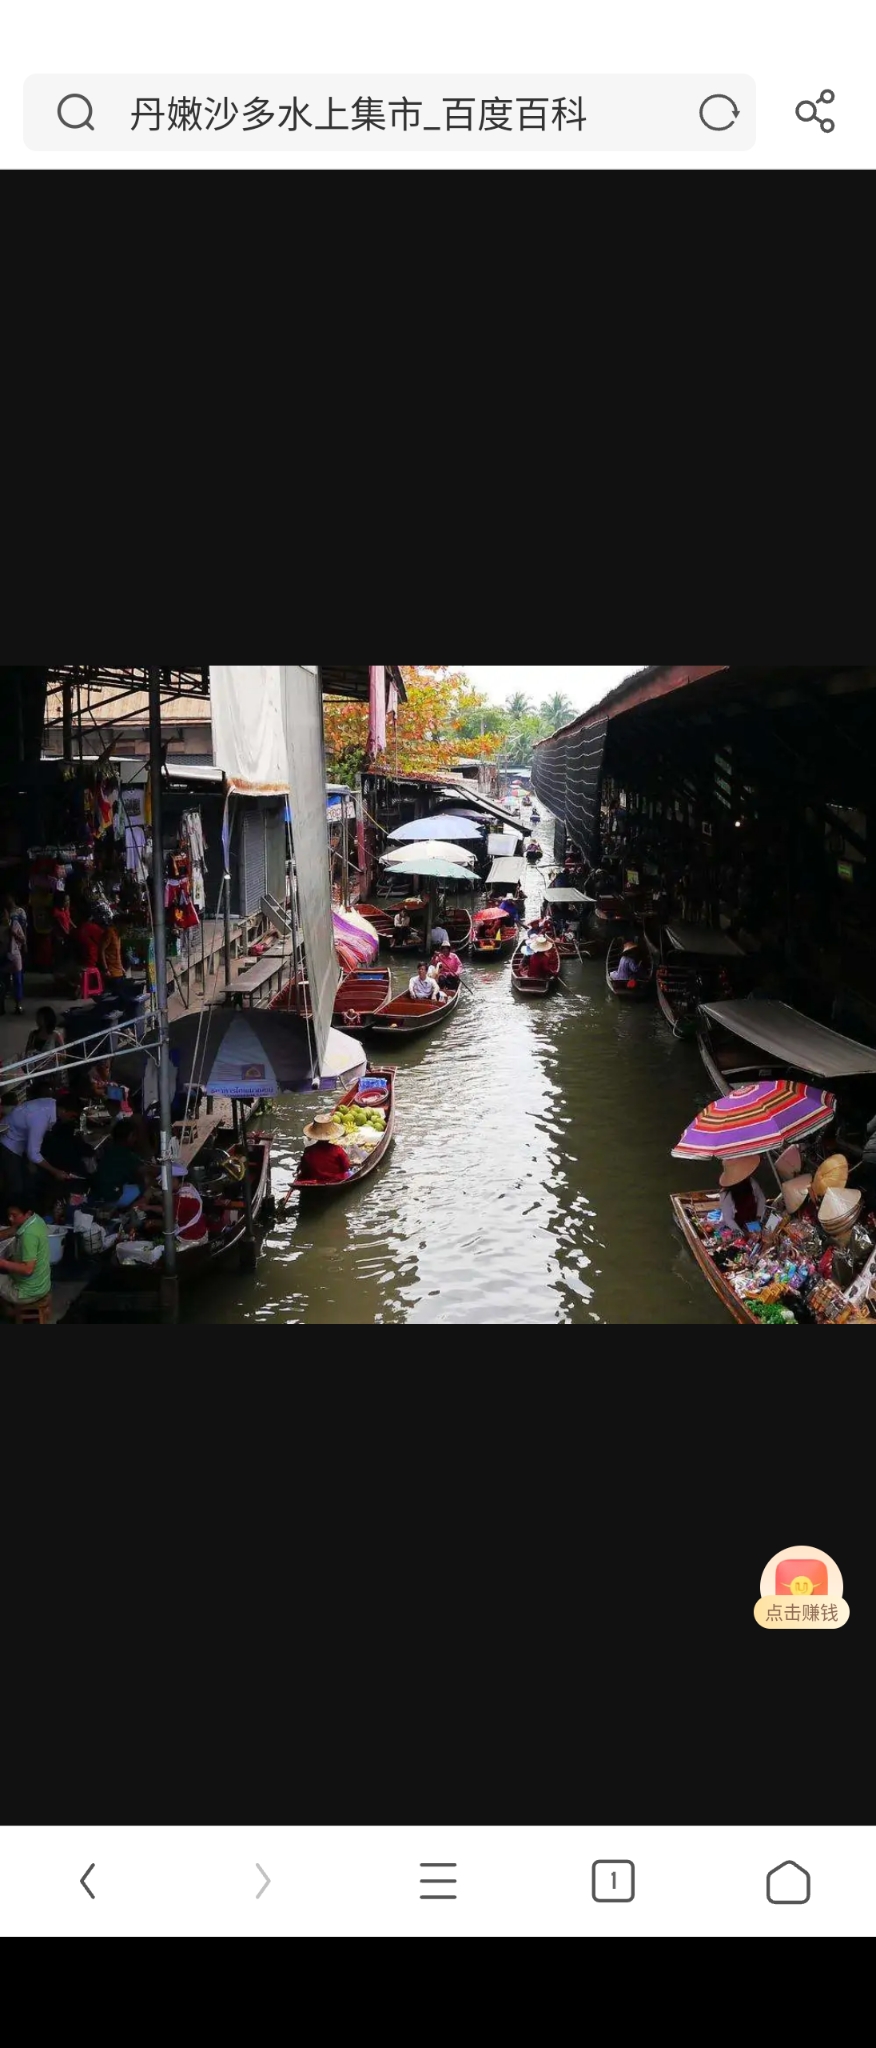 丹嫩沙多水上集市，俗称为曼谷“水上集市”，是一个和当地居民生活有着密切联系的场所。集市中，一条条卖货